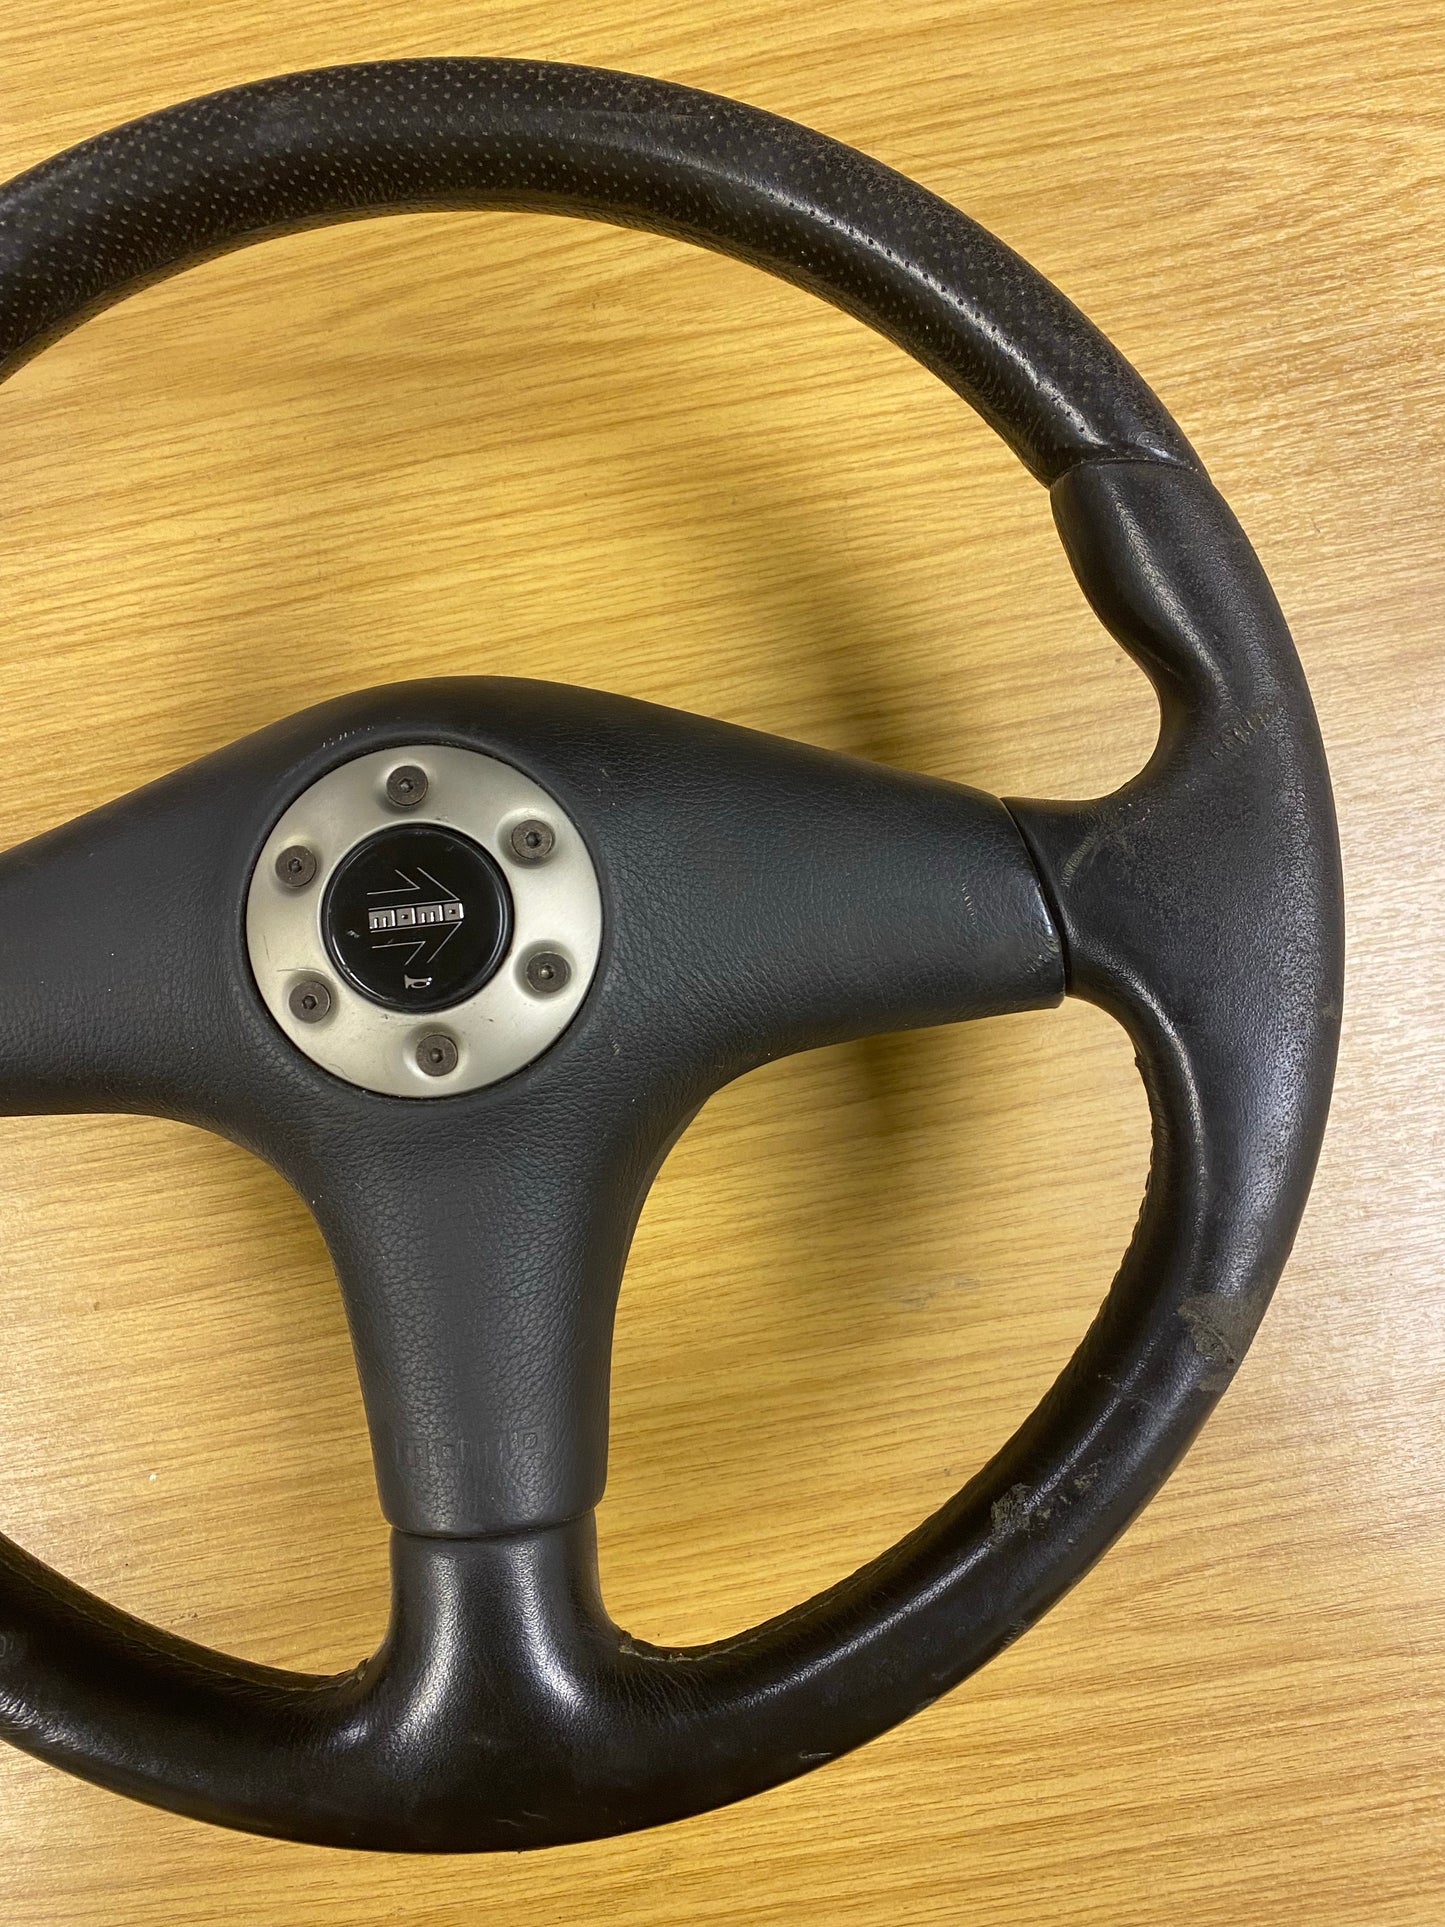 JDM MOMO Leather Steering Wheel For Mitsubishi Lancer Evolution Evo 5 V RS